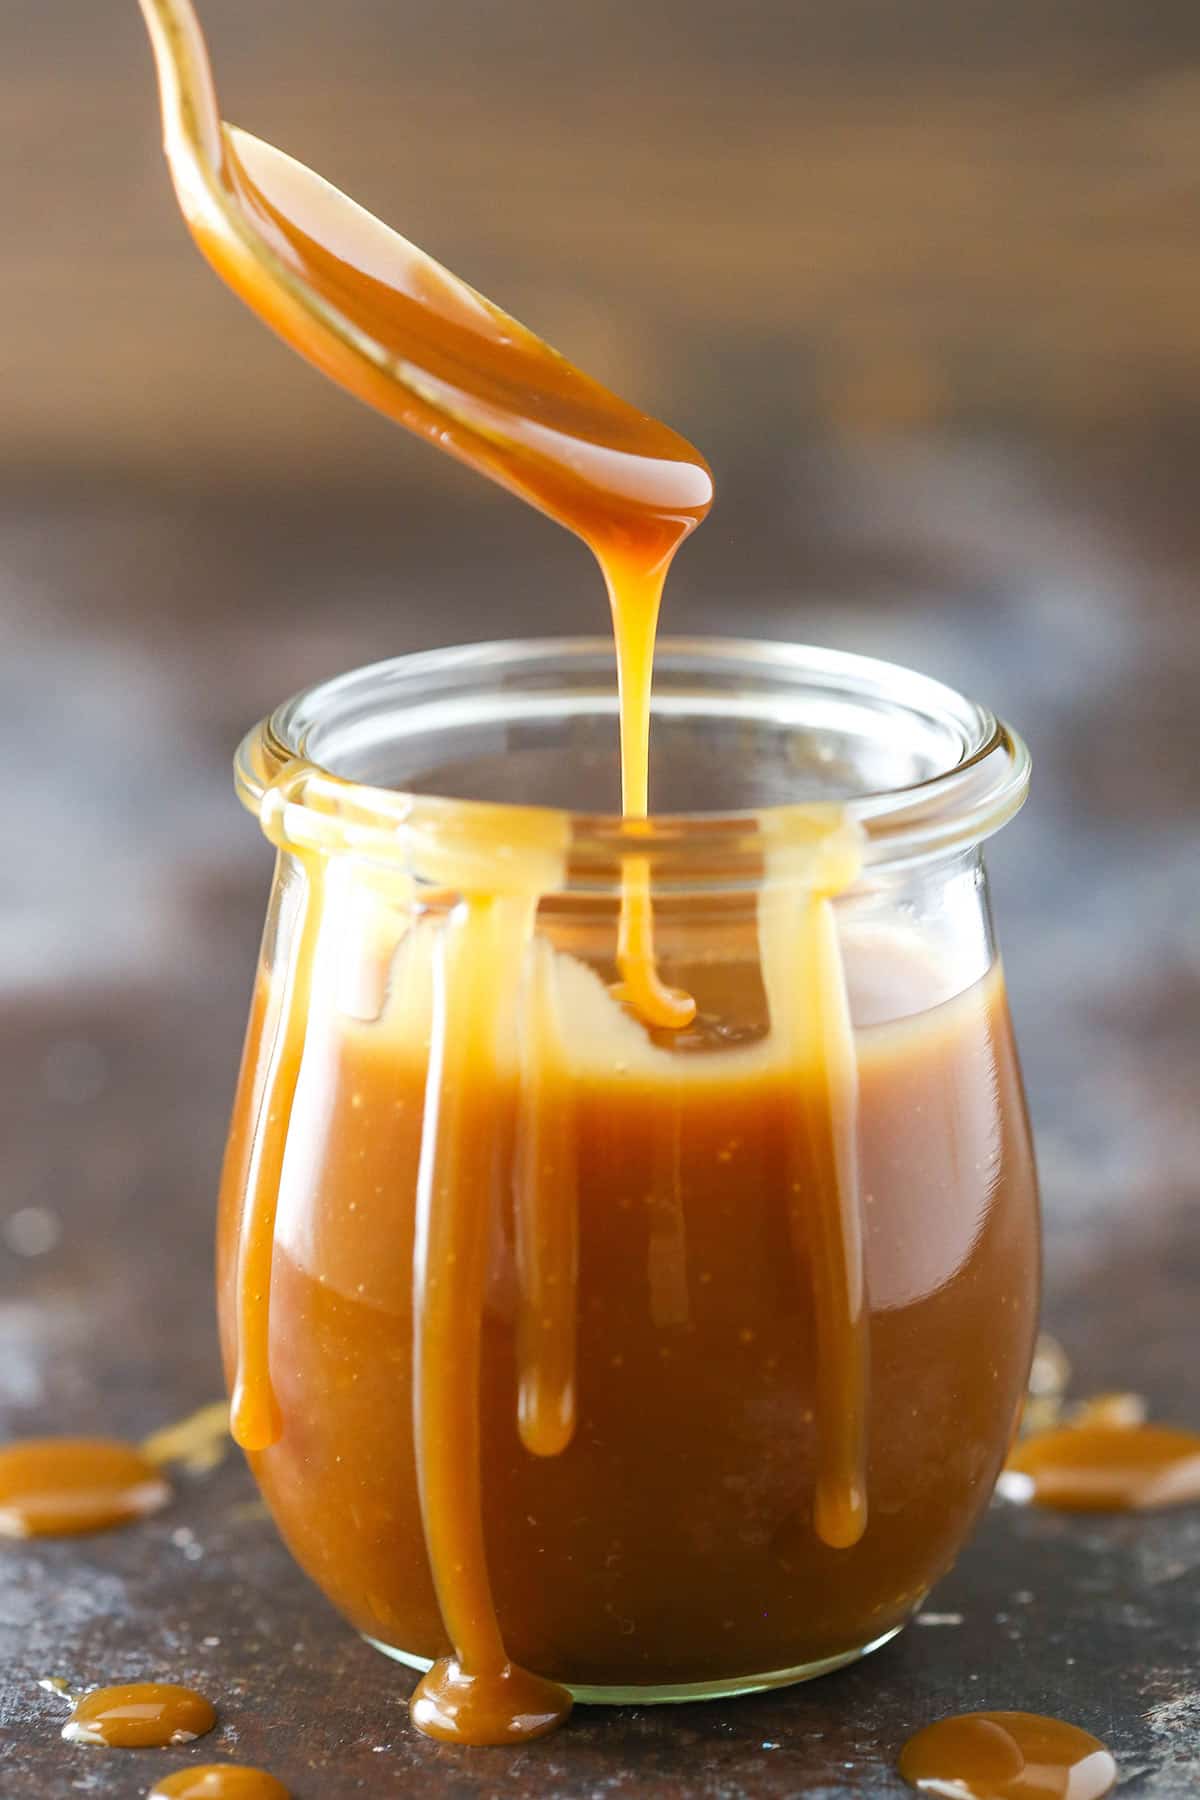 Drizzling caramel sauce into a jar.